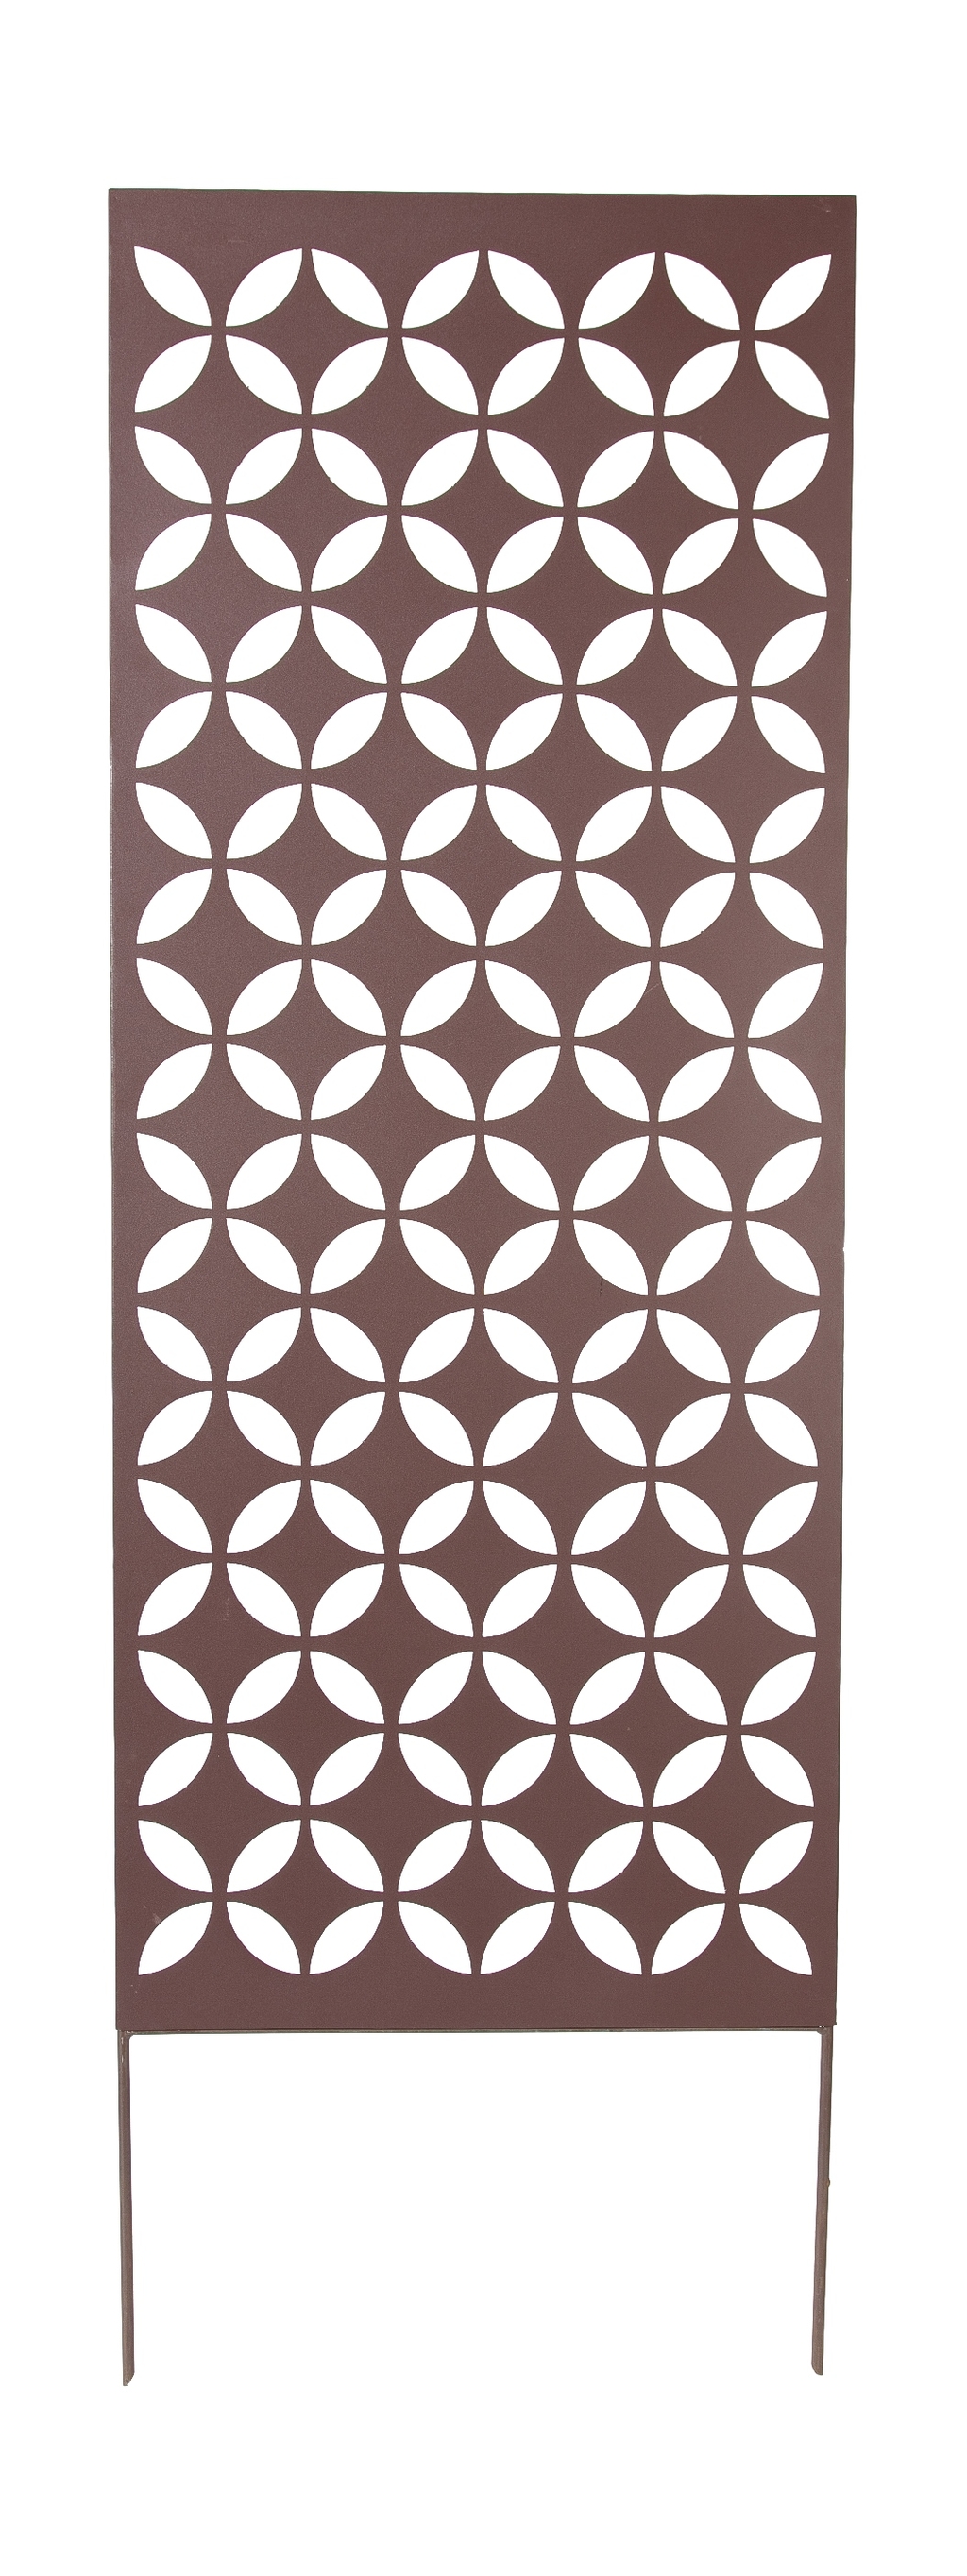 Panou metalic cu motive decorative Decoration panel 0,6x1,5 m 2013267